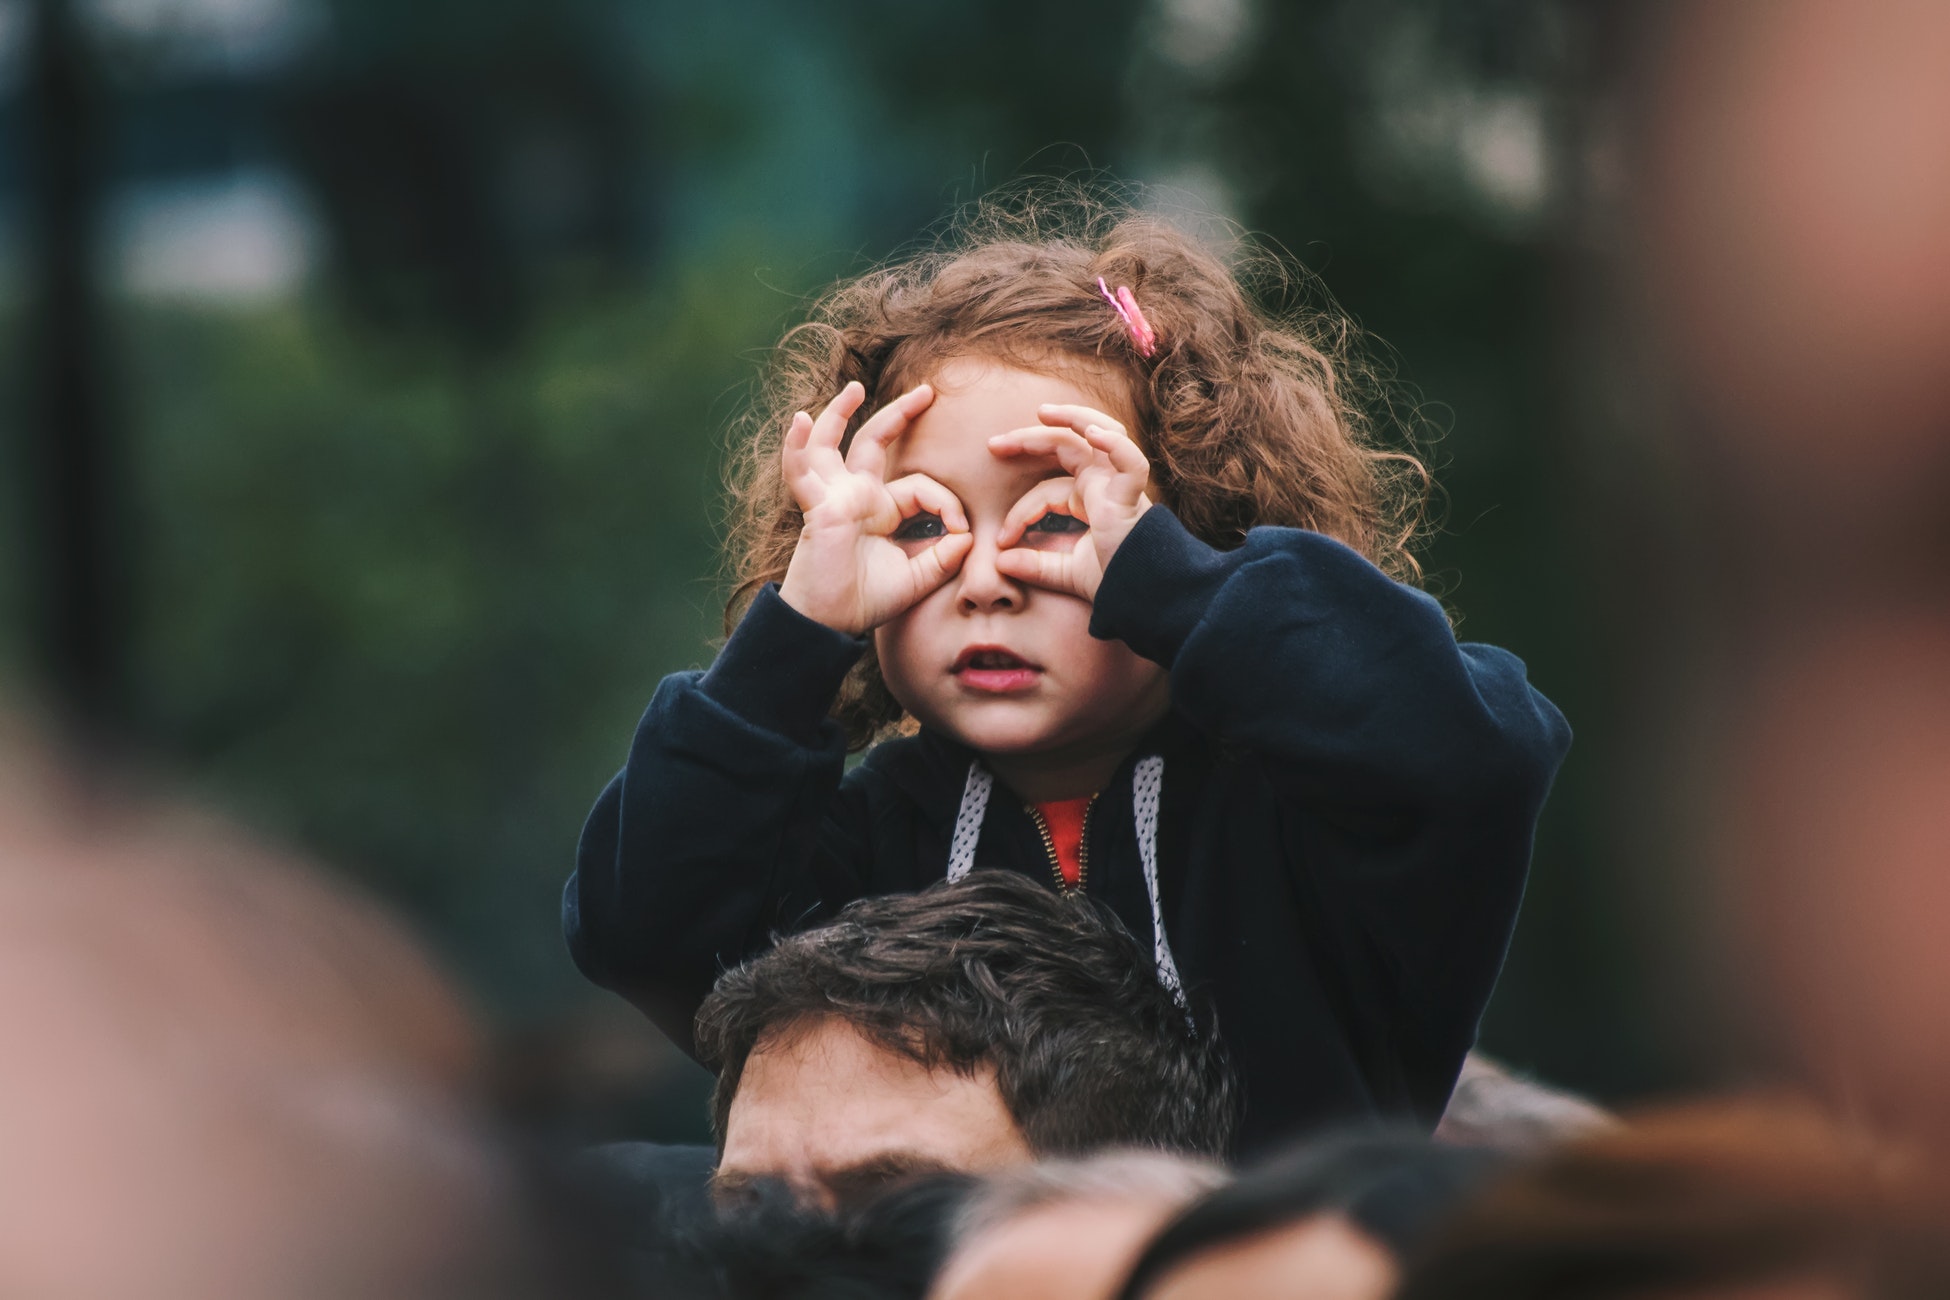 razvijanje vida kod djece